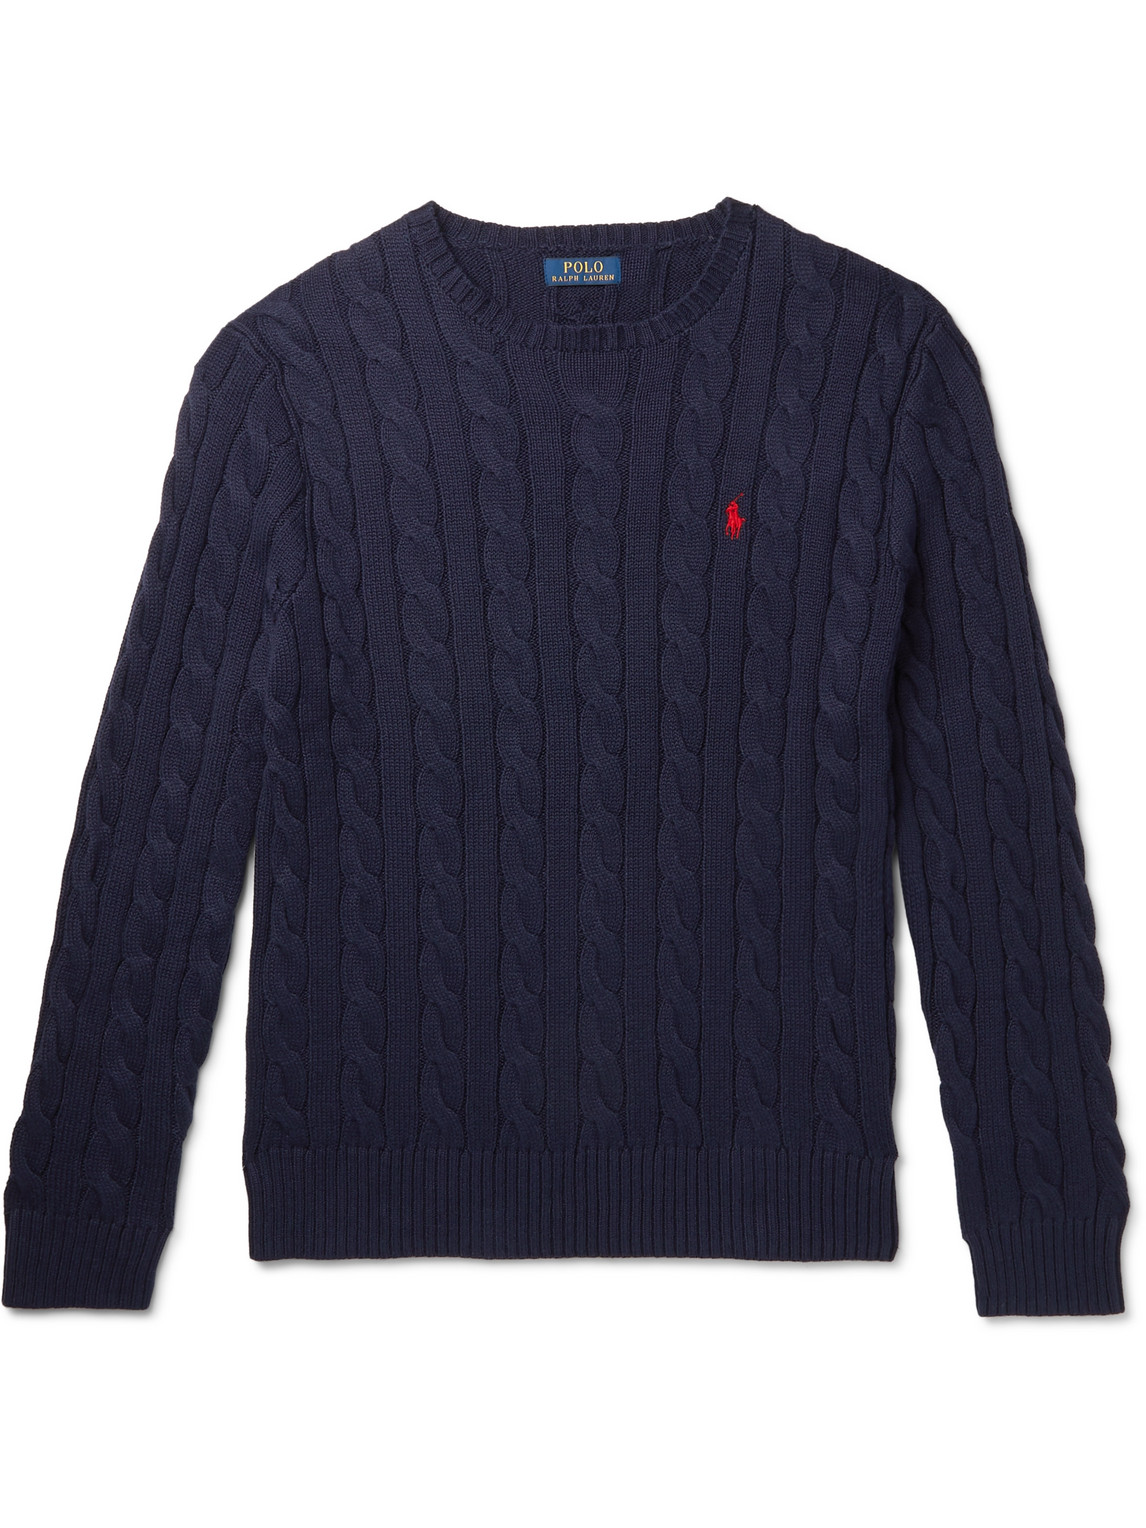 Polo Ralph Lauren - Cable-Knit Cotton Sweater - Men - Blue - XXL for Men